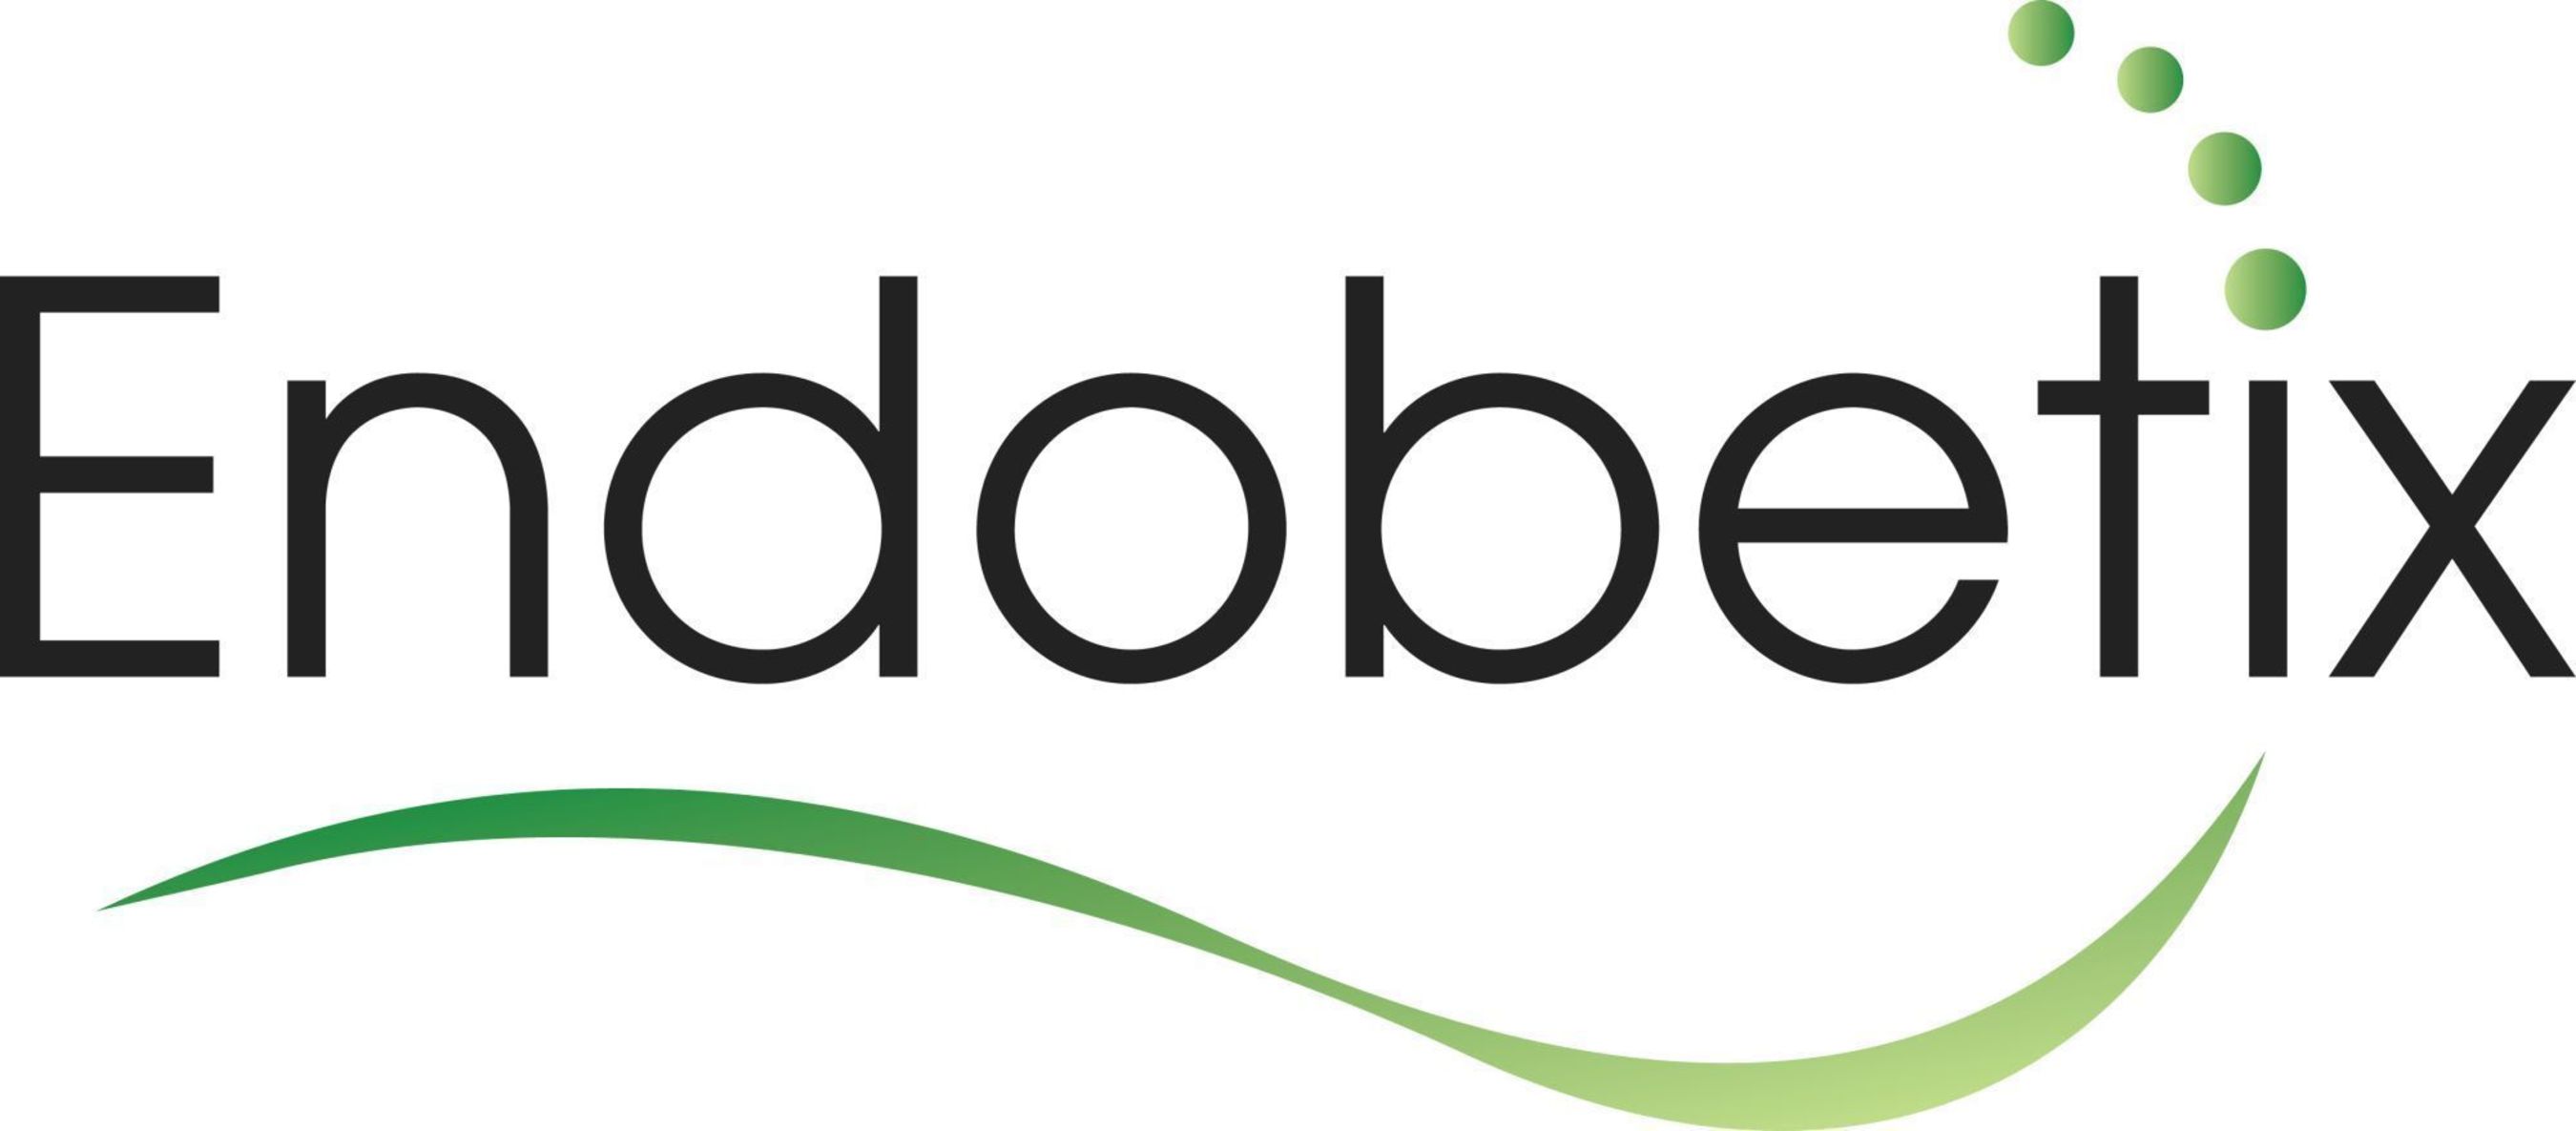 Endobetix Logo (PRNewsFoto/Endobetix Ltd.)